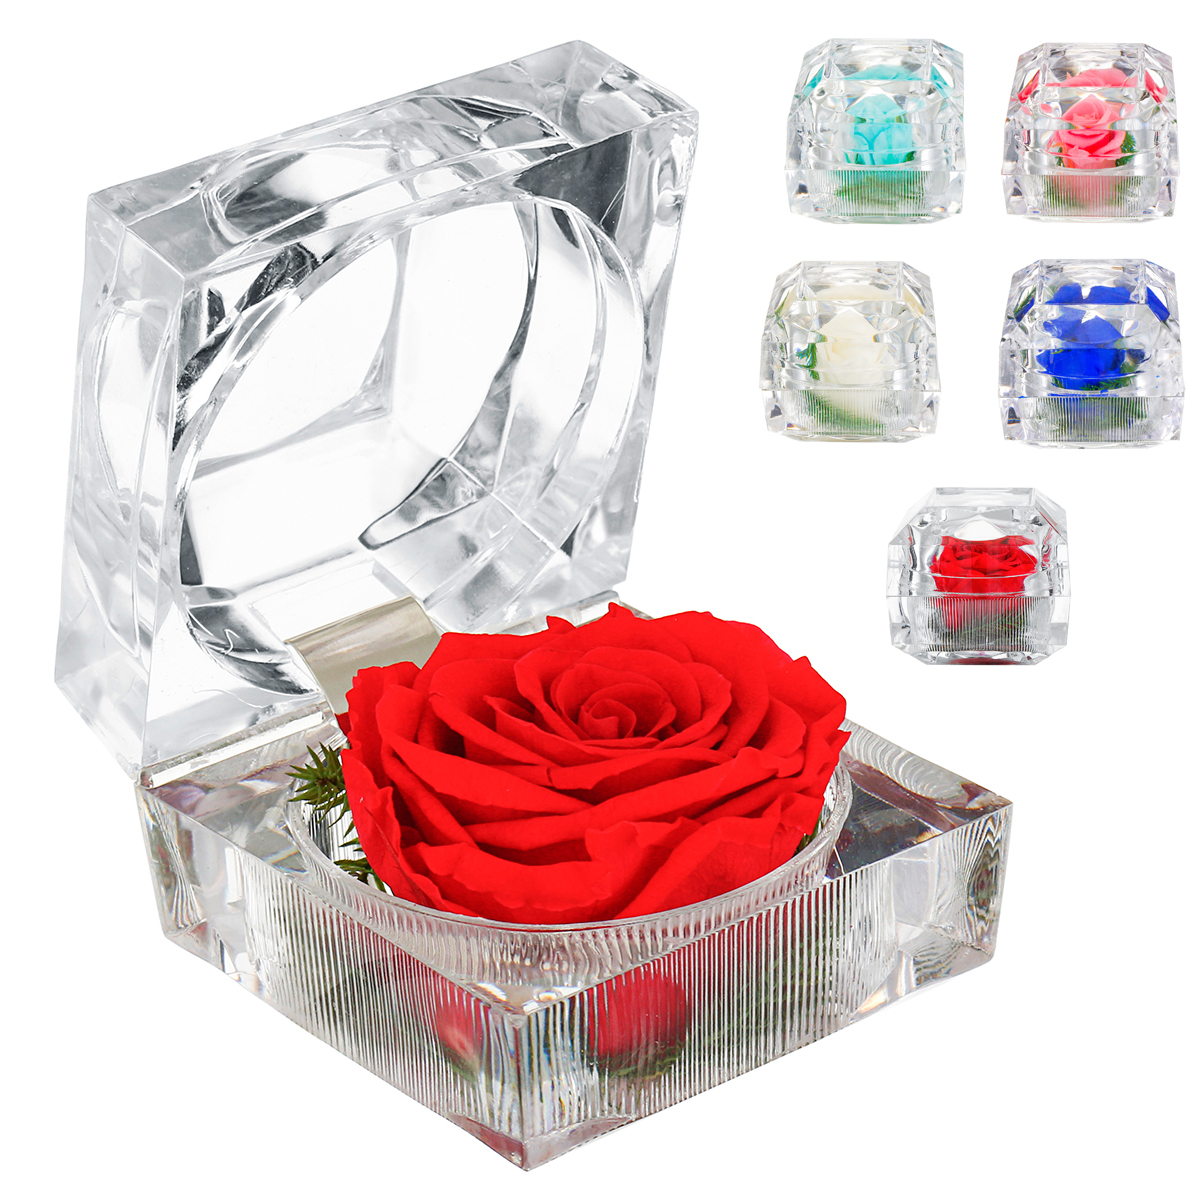 Živá růže - Nesmrtelný květ růže v dárkové krabičce